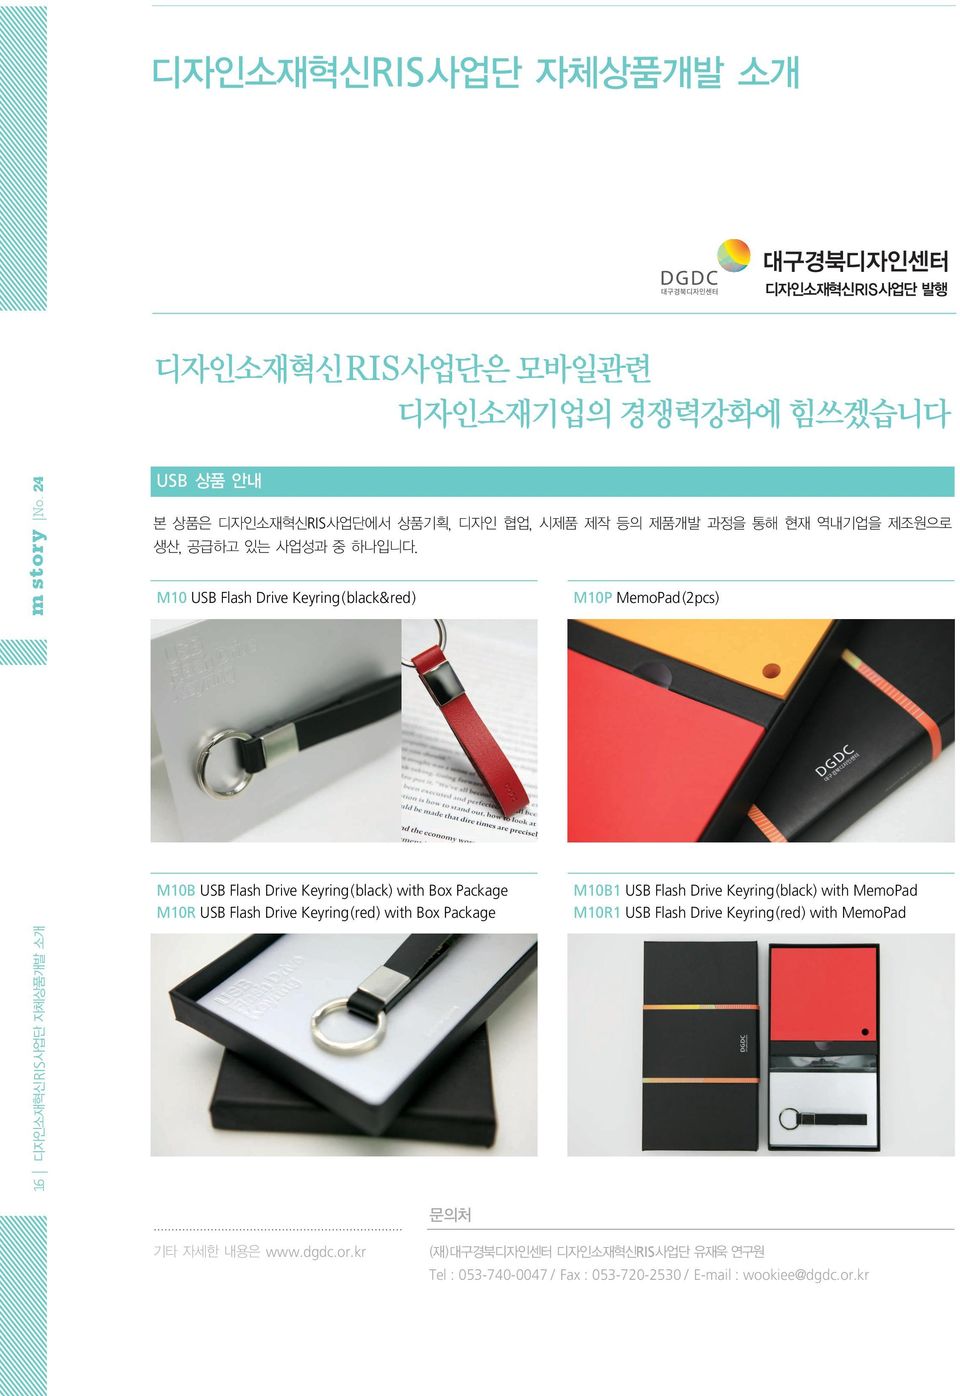 Package M10R USB Flash Drive Keyring(red) with Box Package M10P MemoPad(2pcs) M10B1 USB Flash